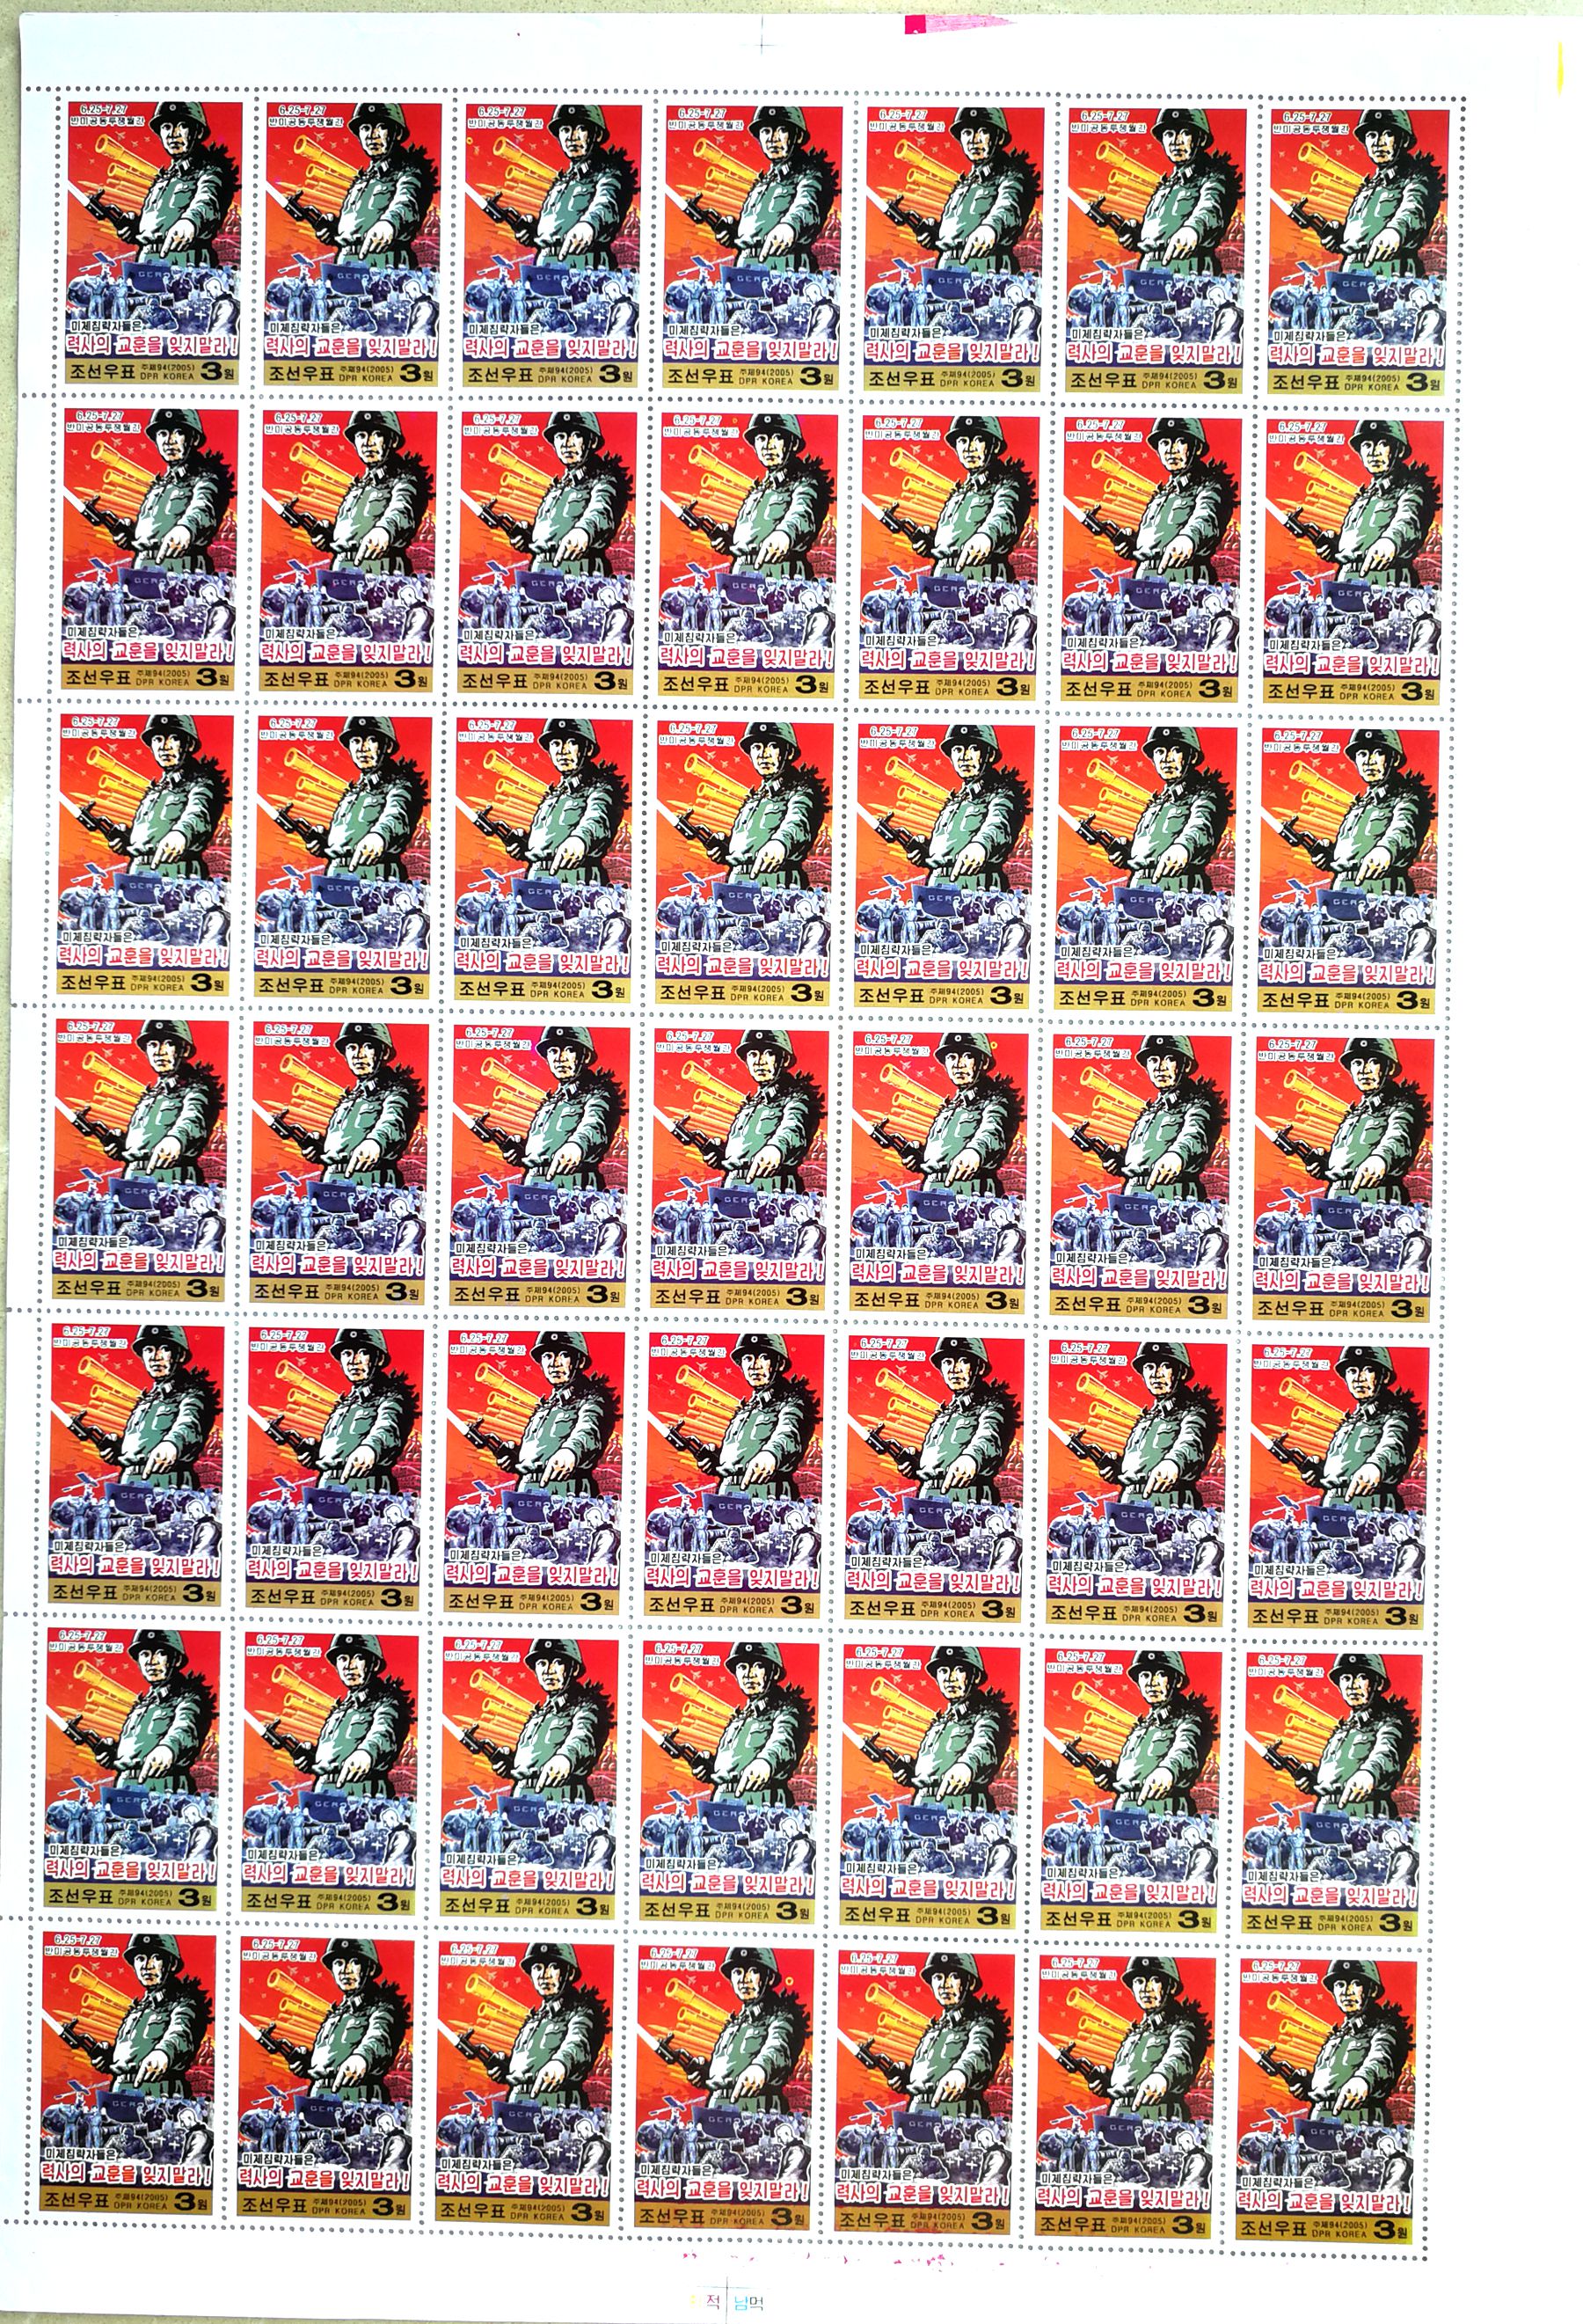 L4484, Korea "Anti-USA Joint Struggle", Full Sheet of 49 Pcs Stamps, 2005